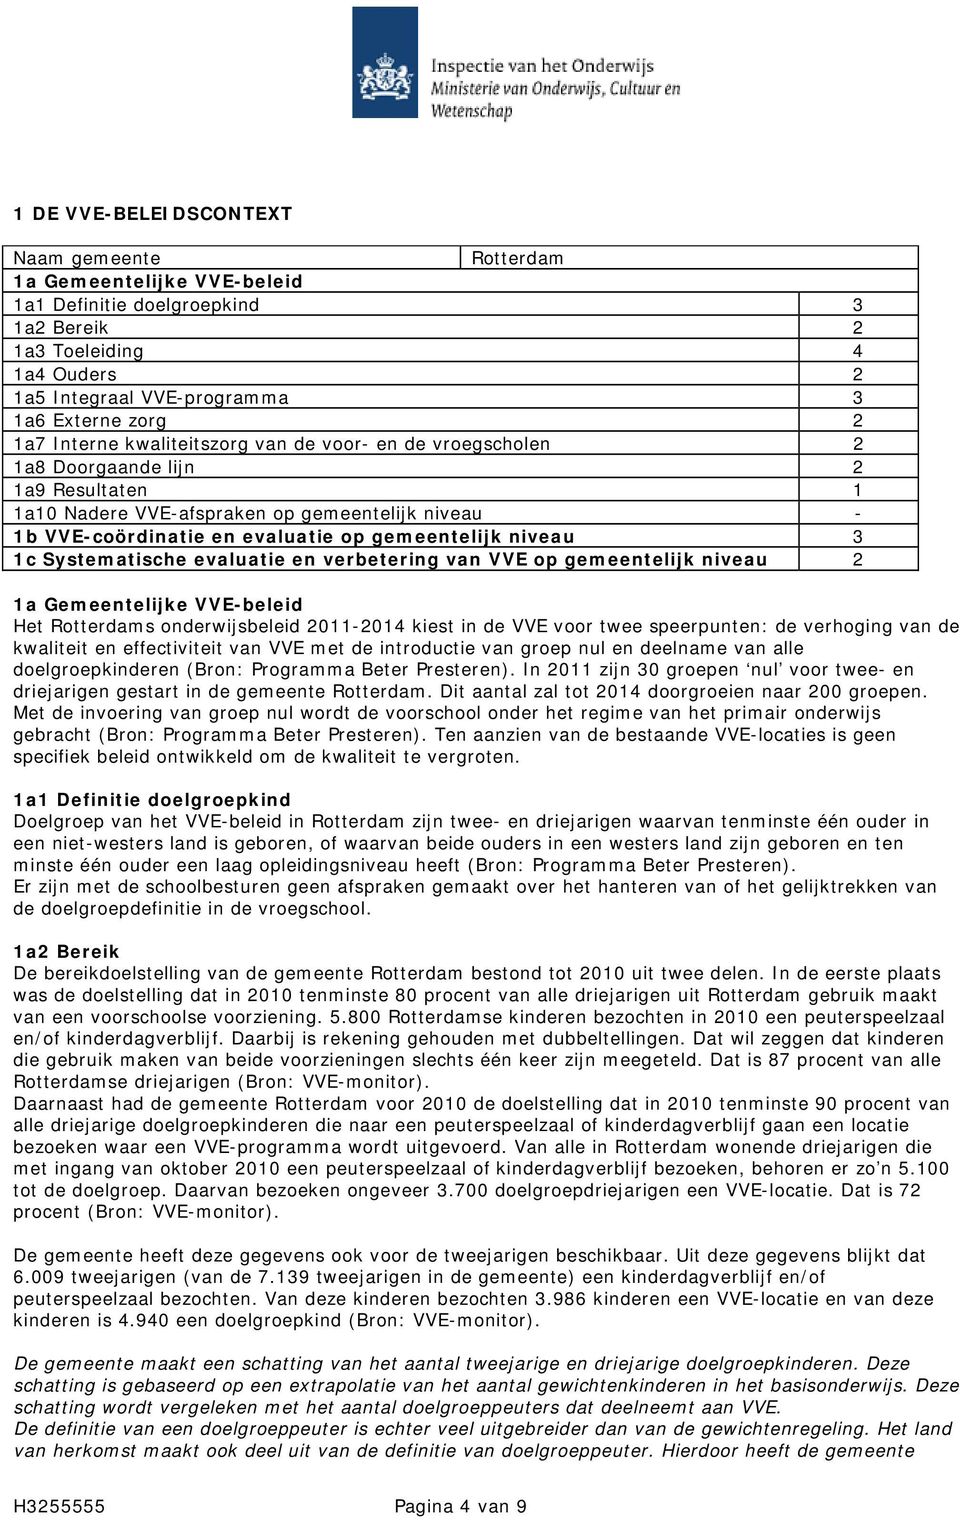 niveau 3 1c Systematische evaluatie en verbetering van VVE op gemeentelijk niveau 2 1a Gemeentelijke VVE-beleid Het Rotterdams onderwijsbeleid 2011-2014 kiest in de VVE voor twee speerpunten: de